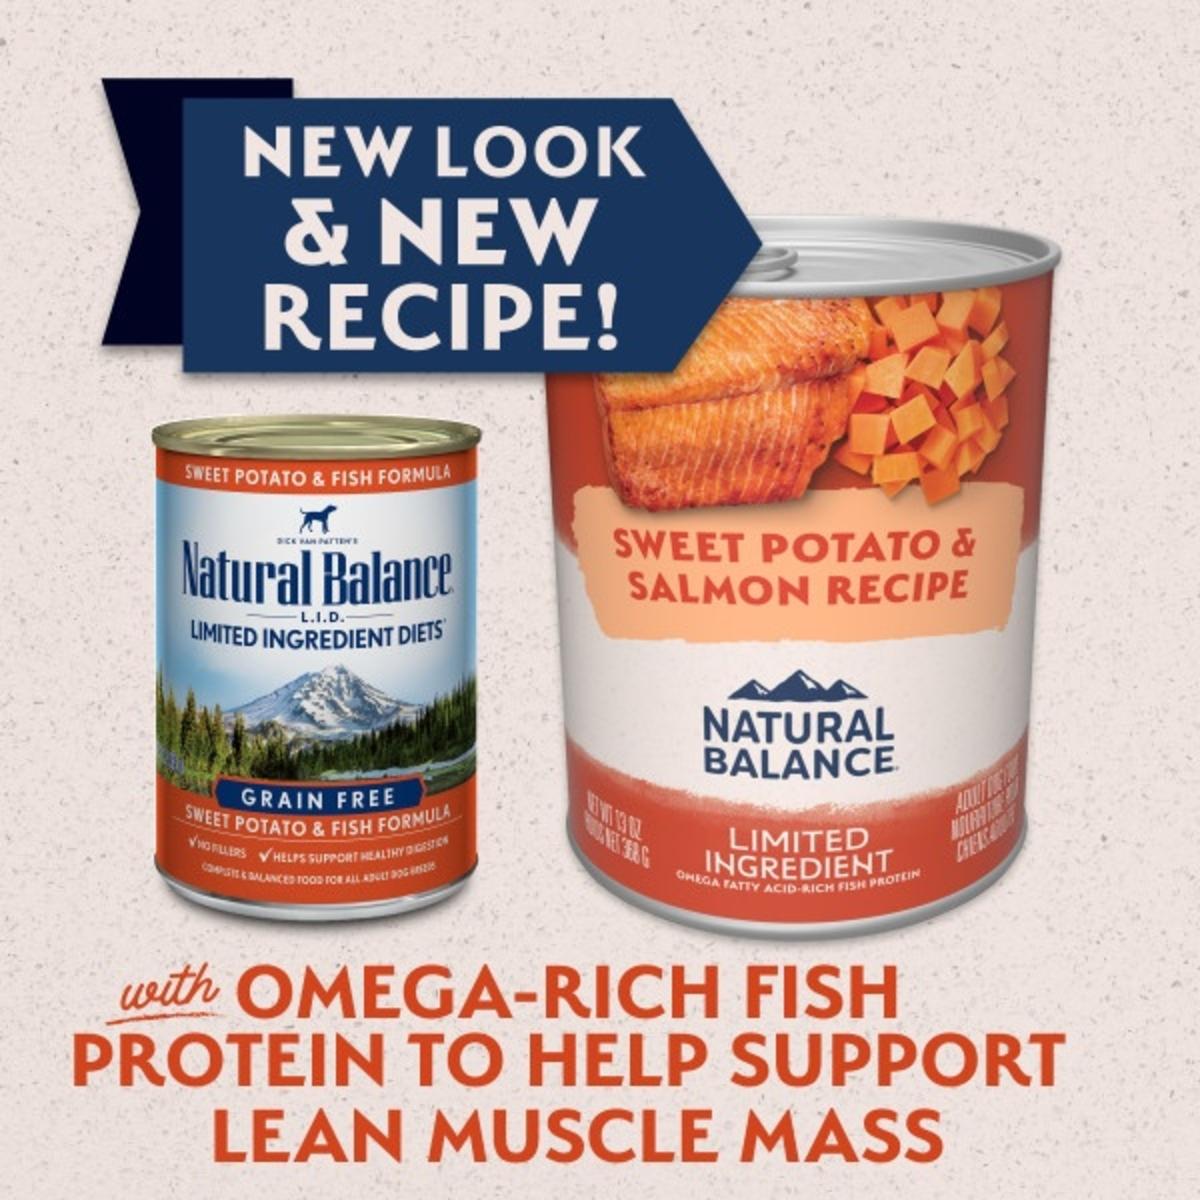 Natural Balance® Limited Ingredient Sweet Potato & Salmon Recipe